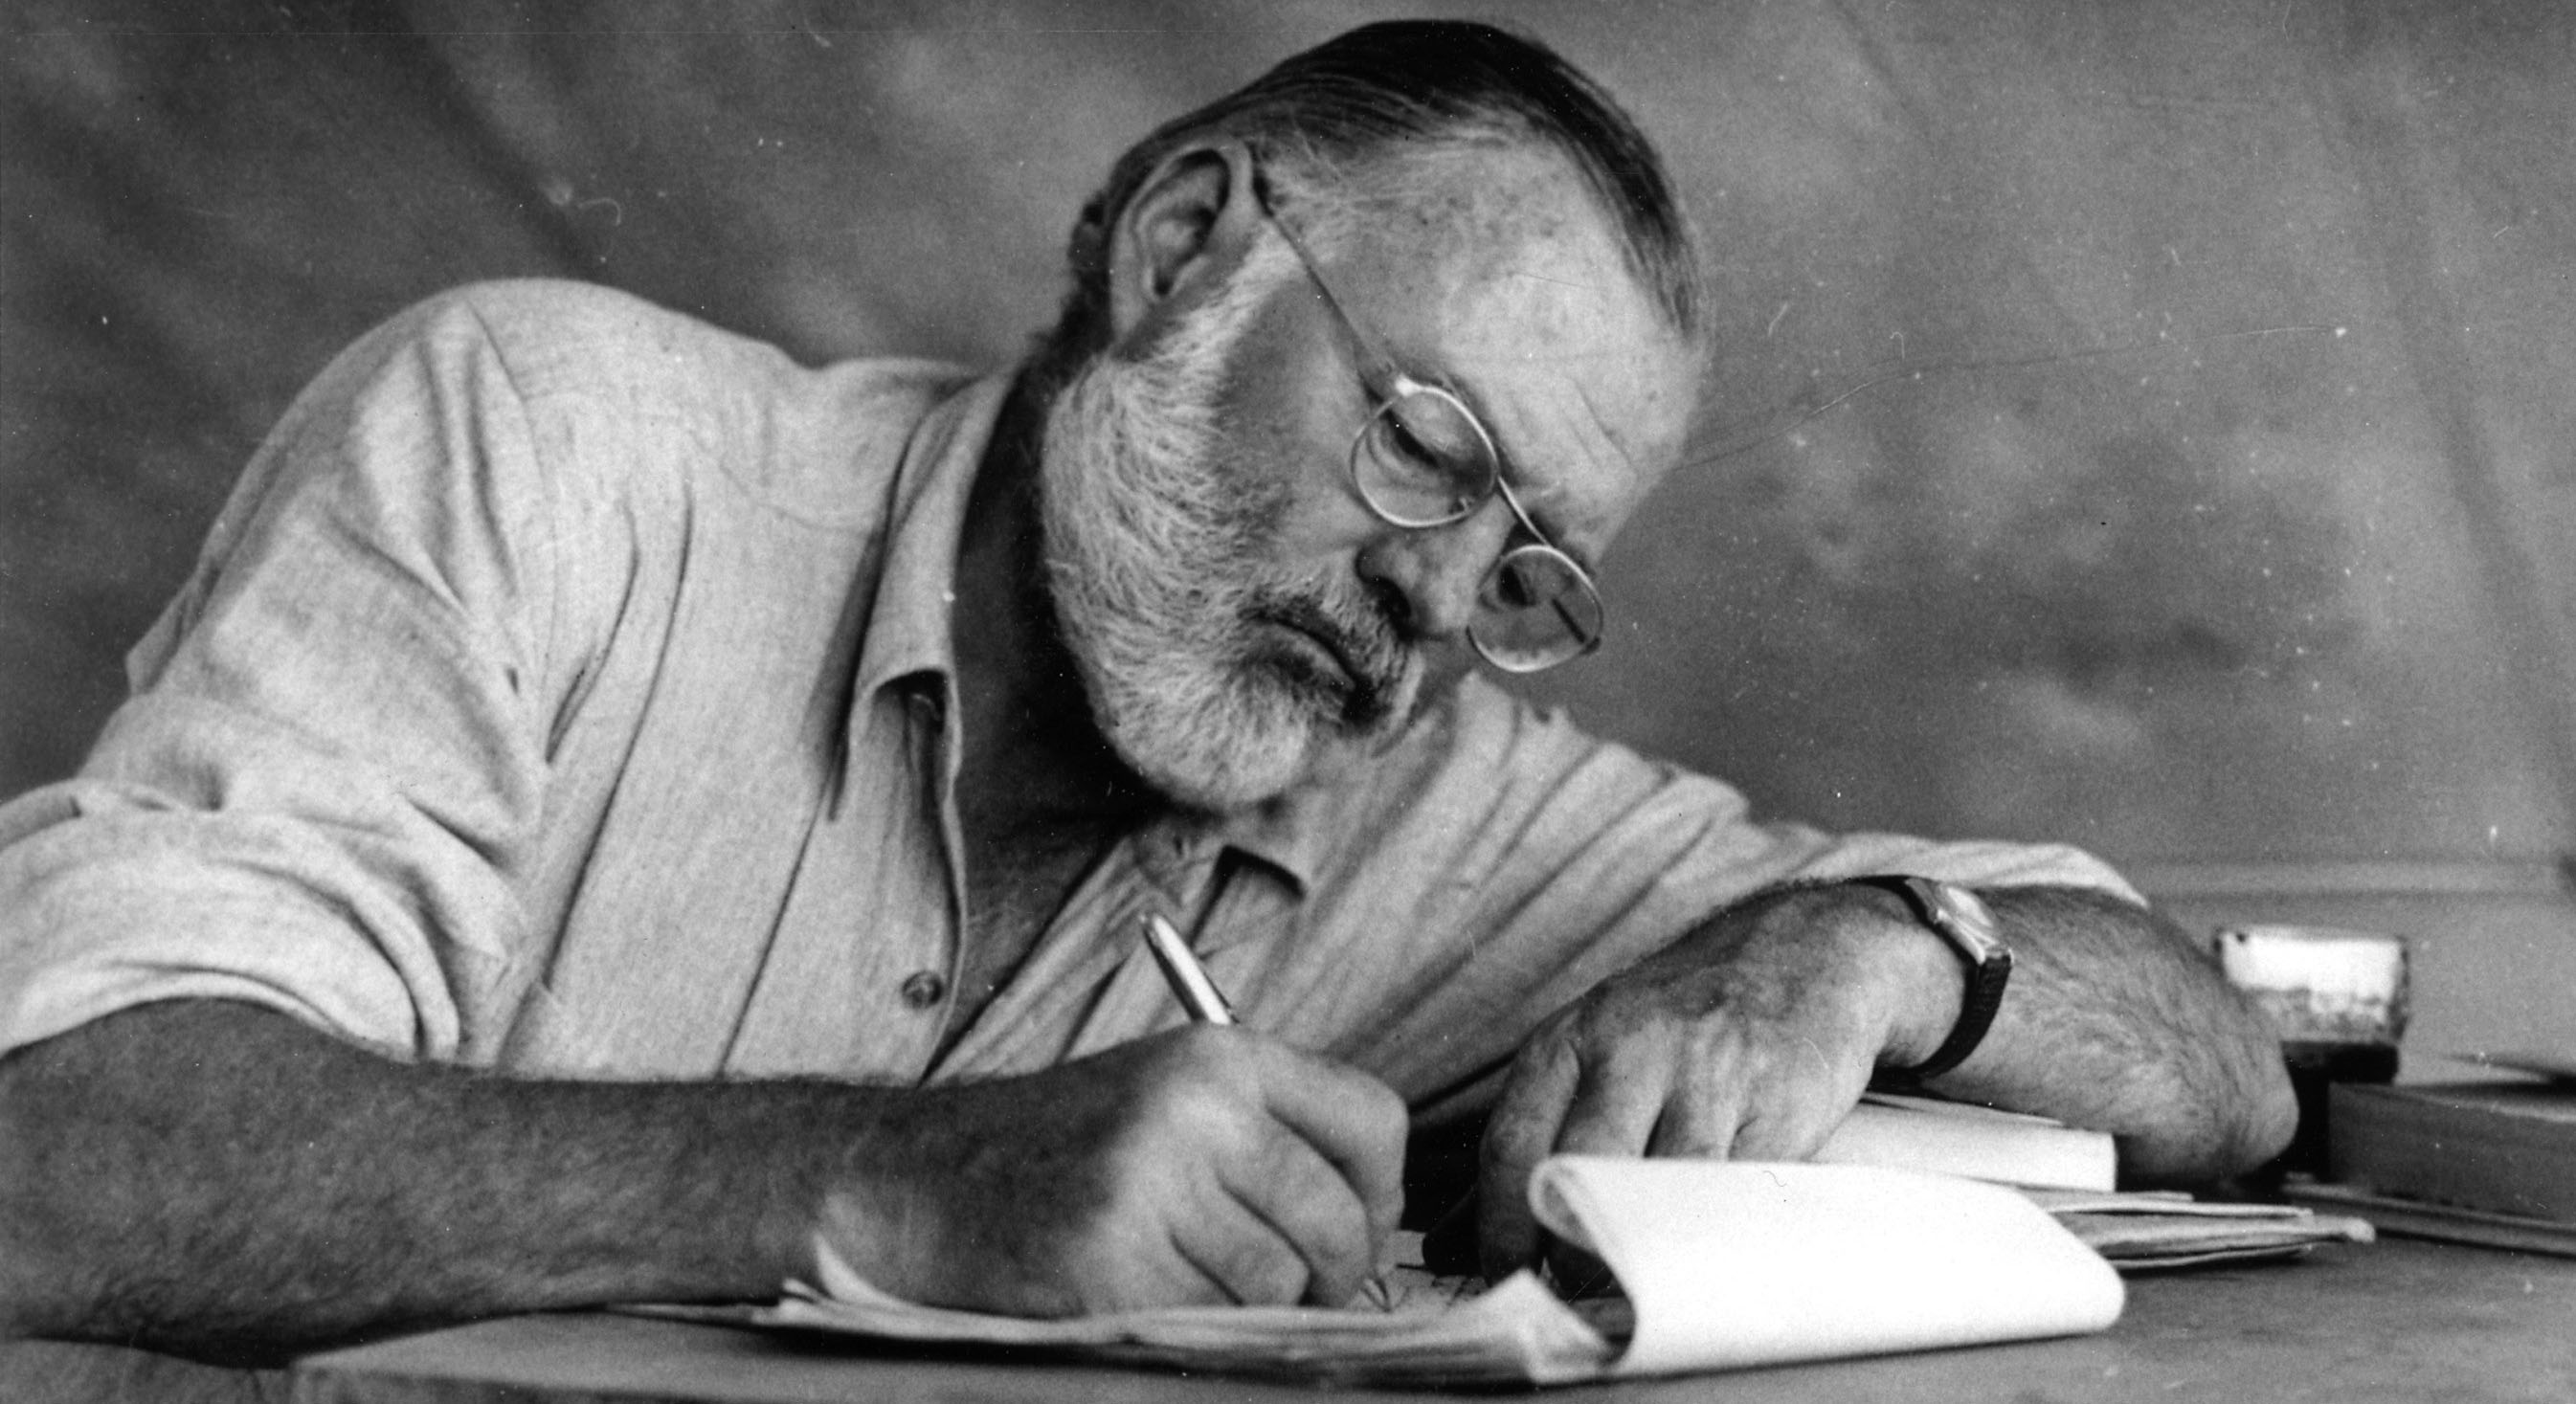 The Ernest Hemingway Foundation of Oak Park